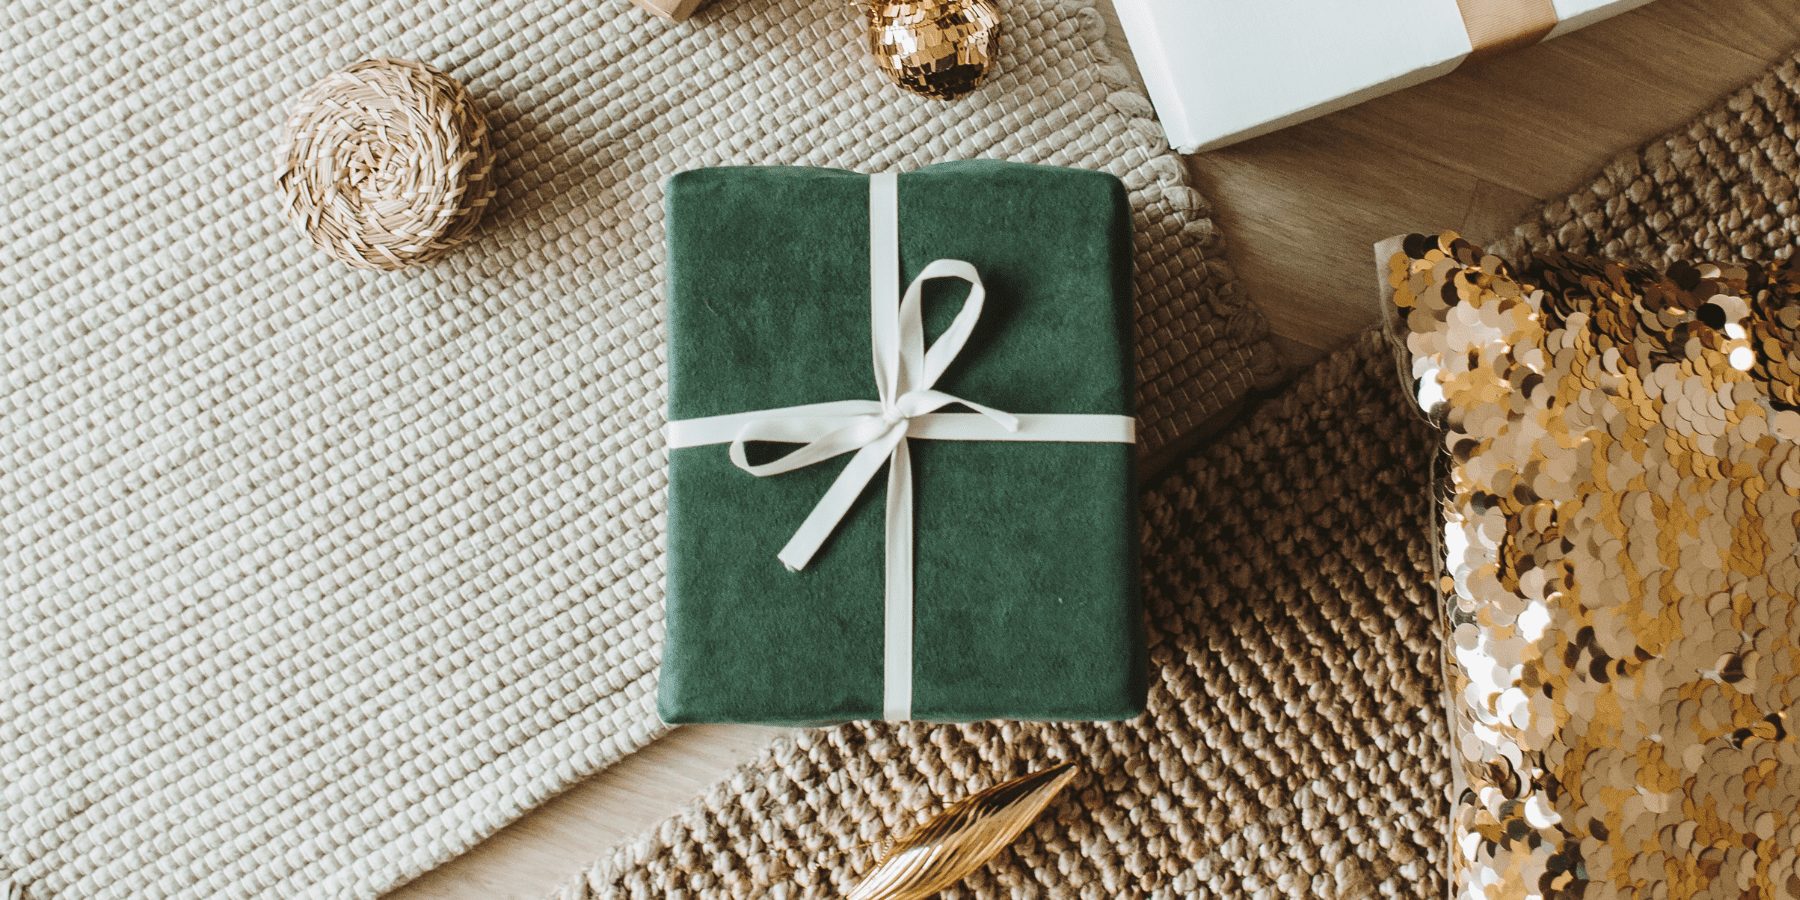 Ile wydajemy na prezenty? Czy Polacy myślą o ekologii szukając prezentów na Boże Narodzenie?